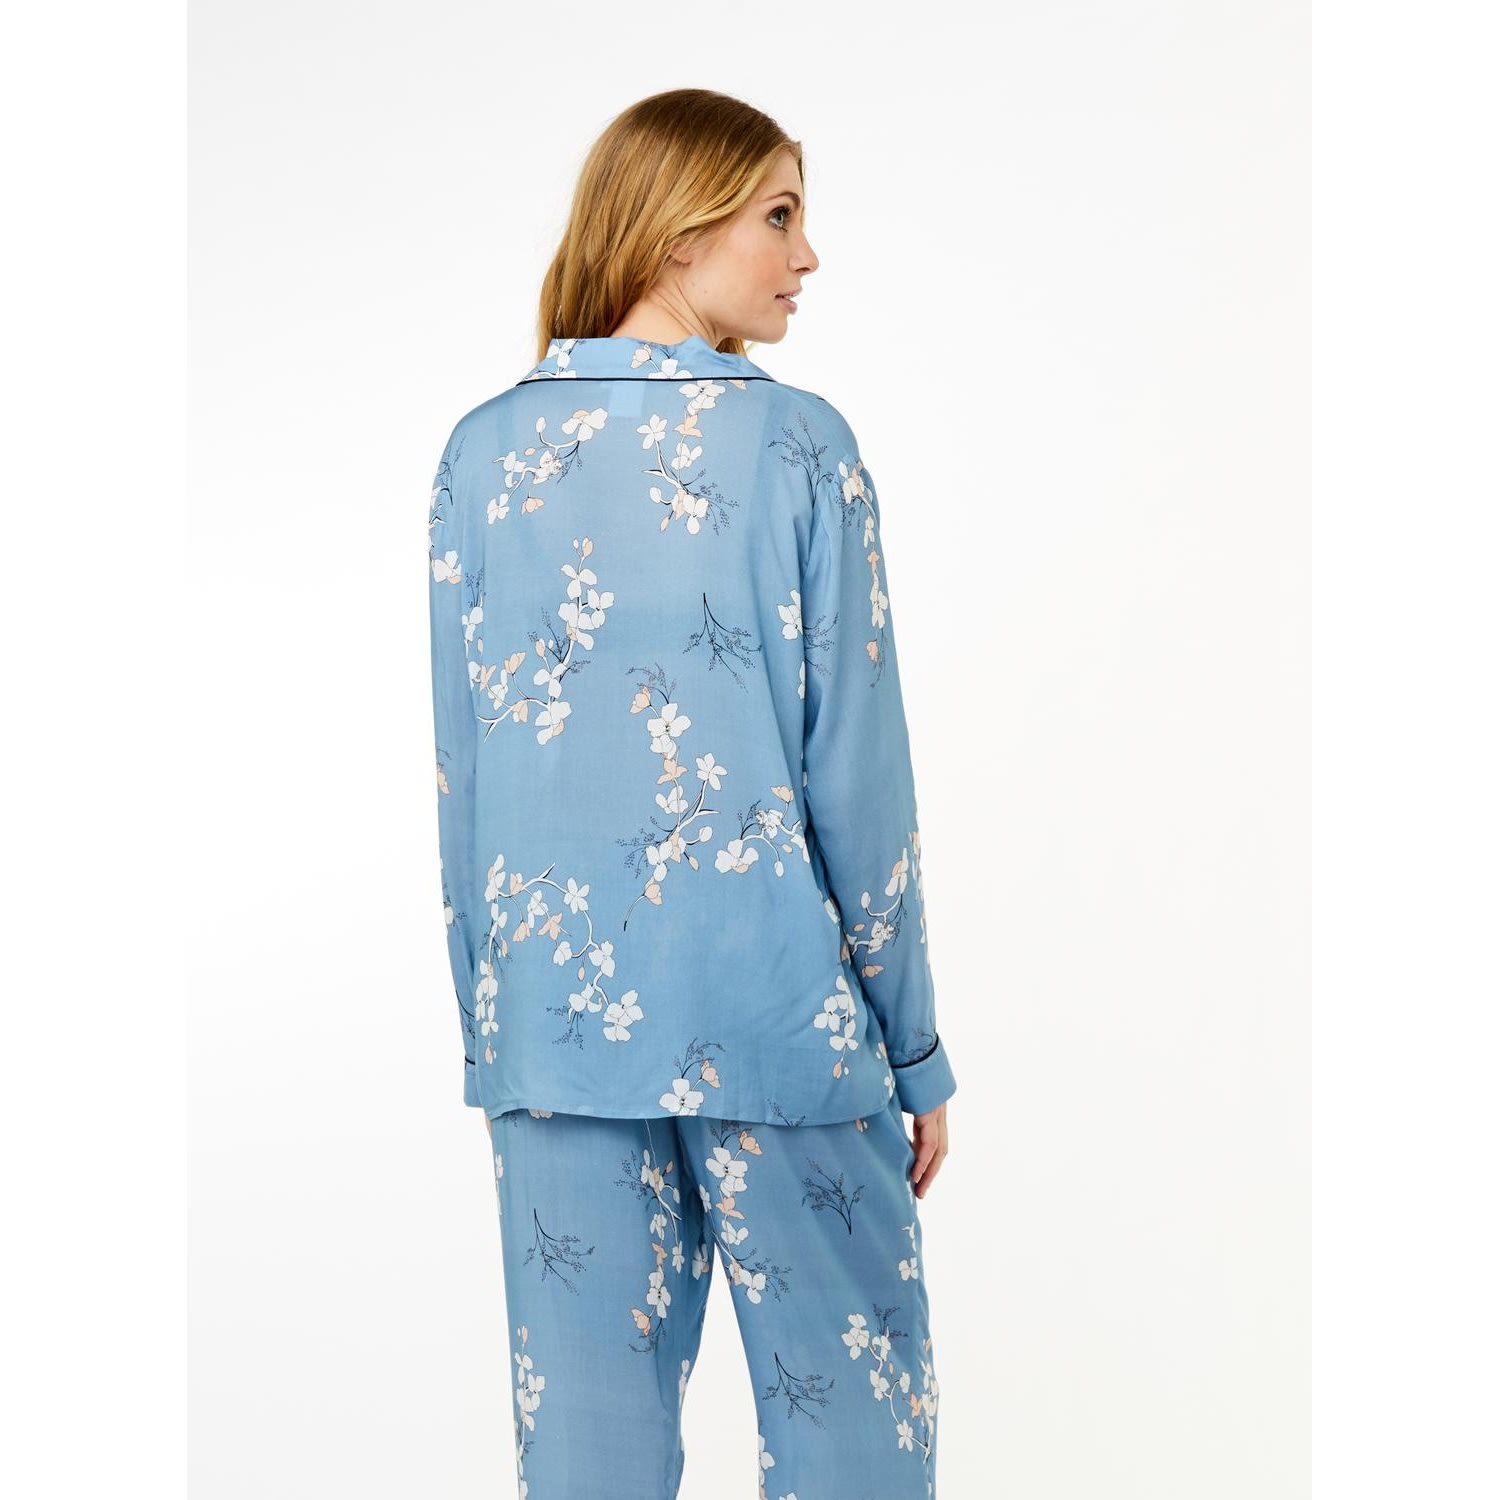 Josephine Pajamas Shirt, blue shadow